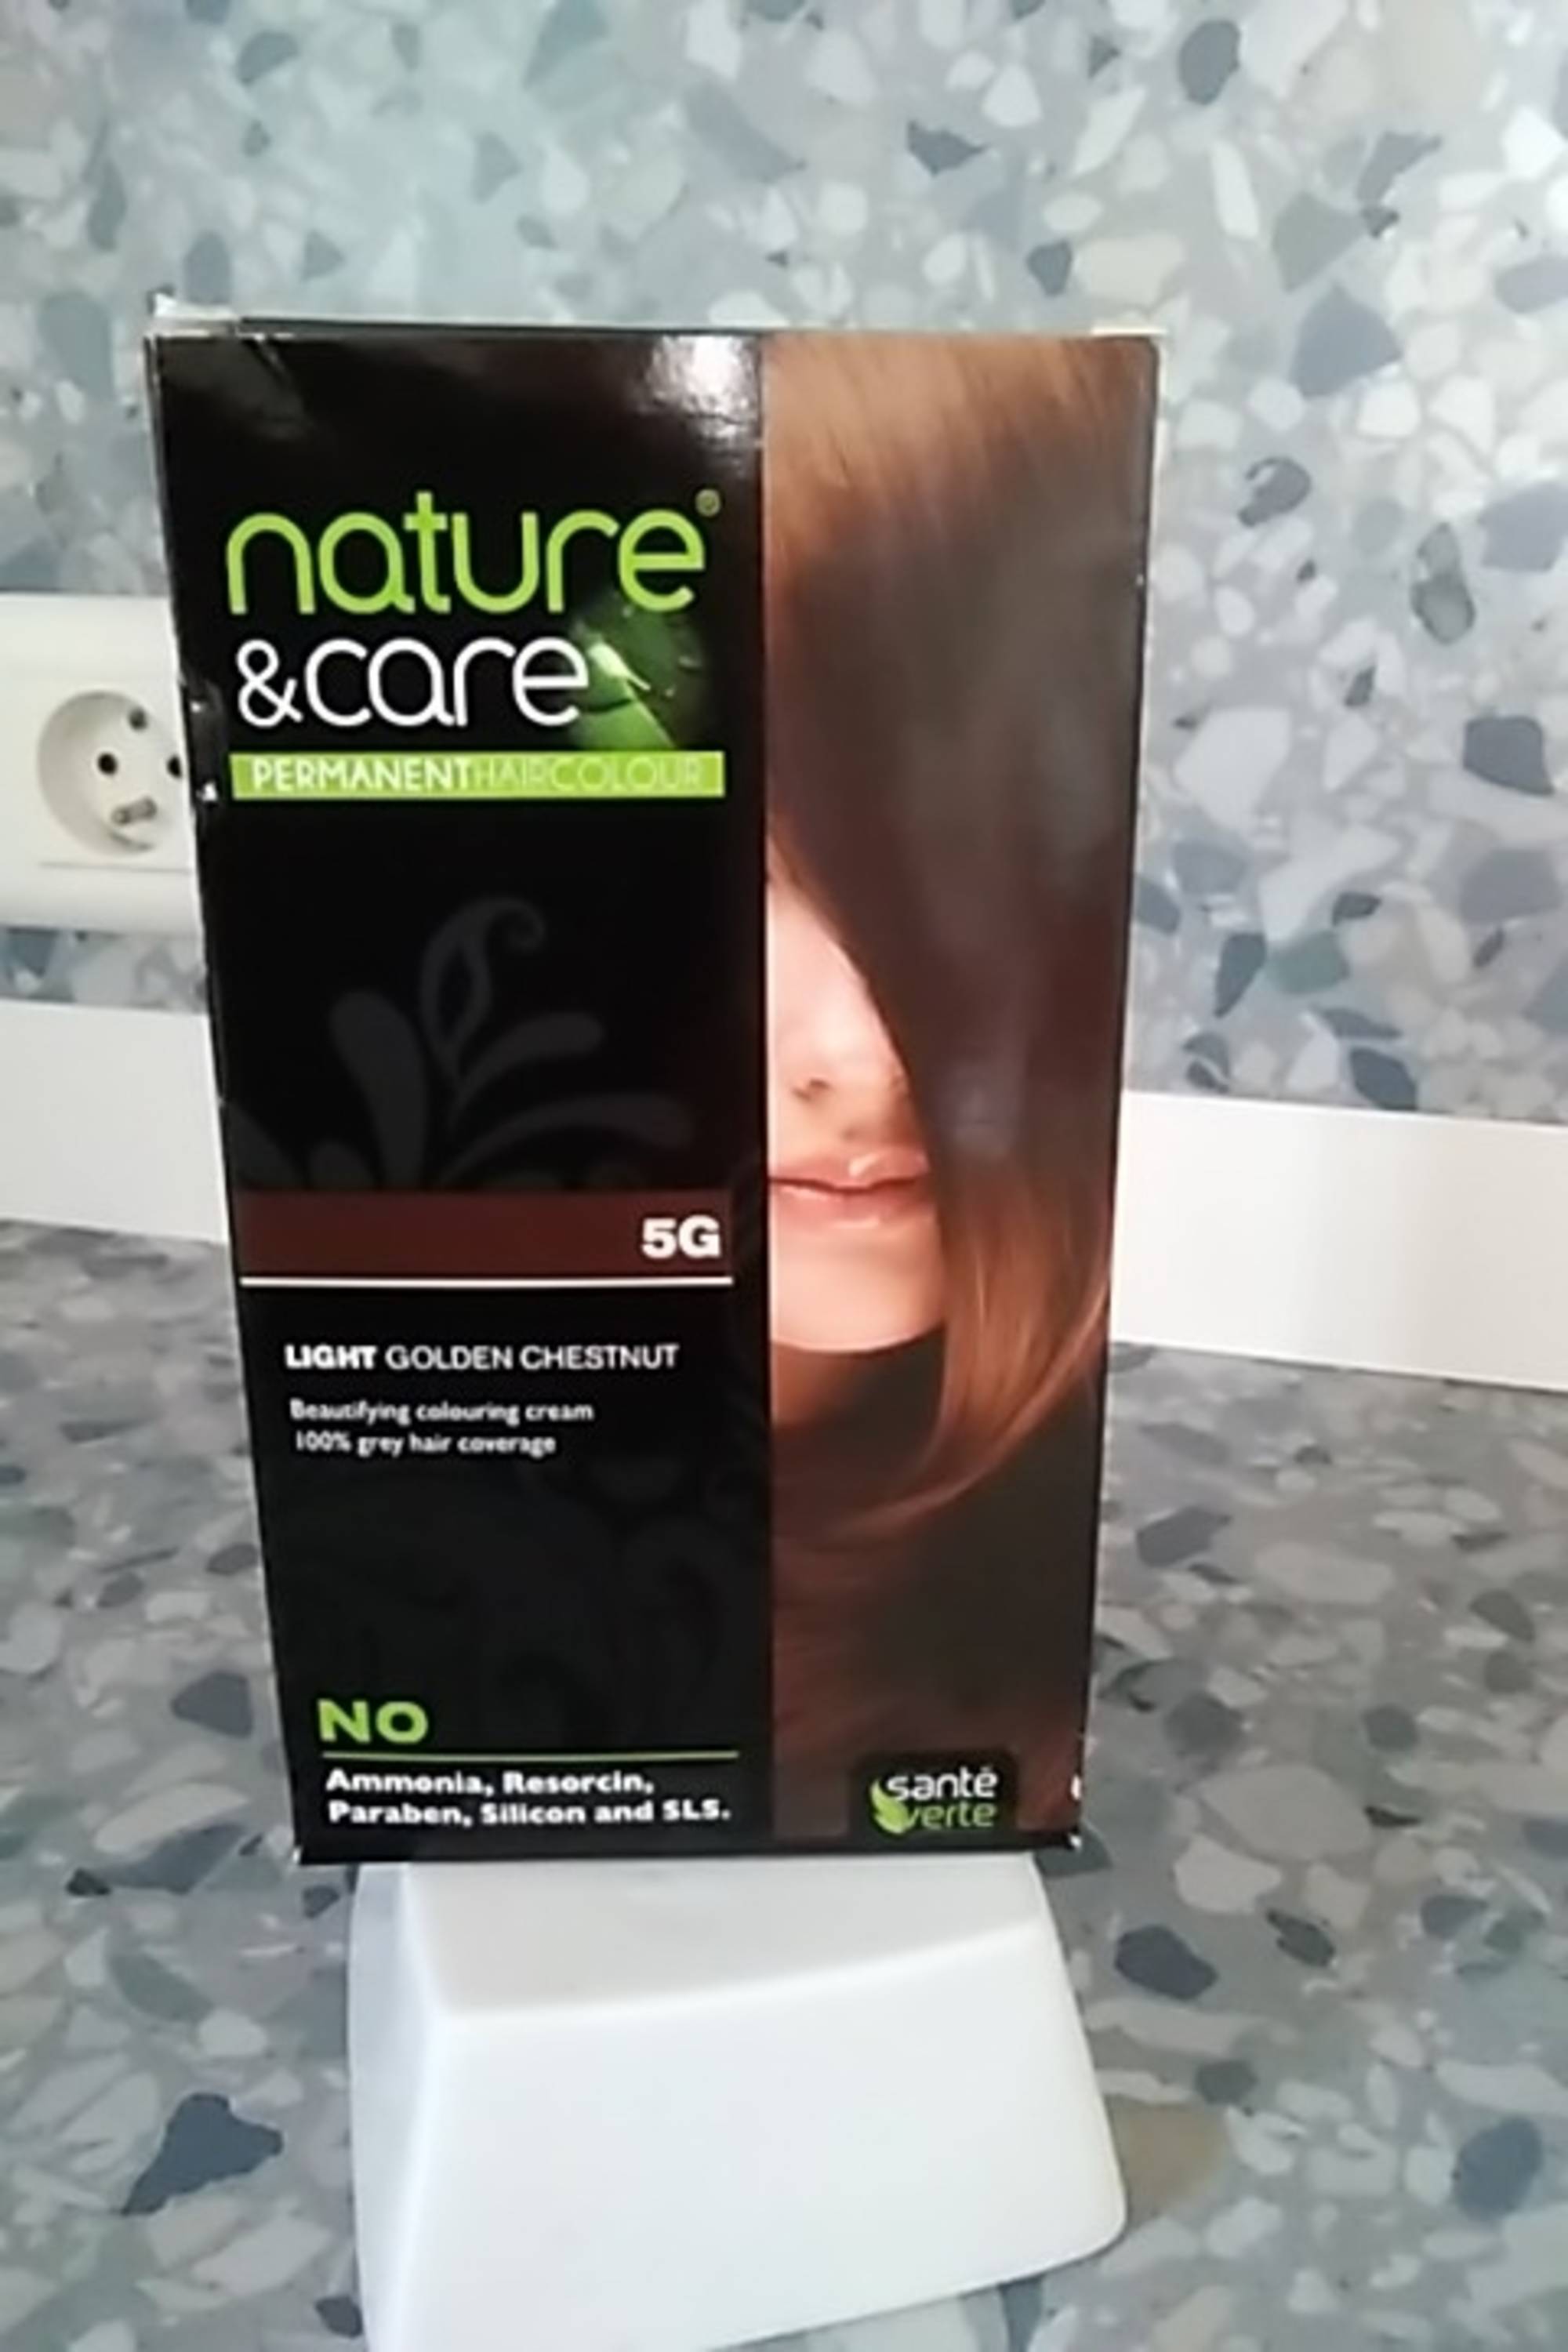 SANTÉ VERTE - Nature & care - Permanent hair colour 5G